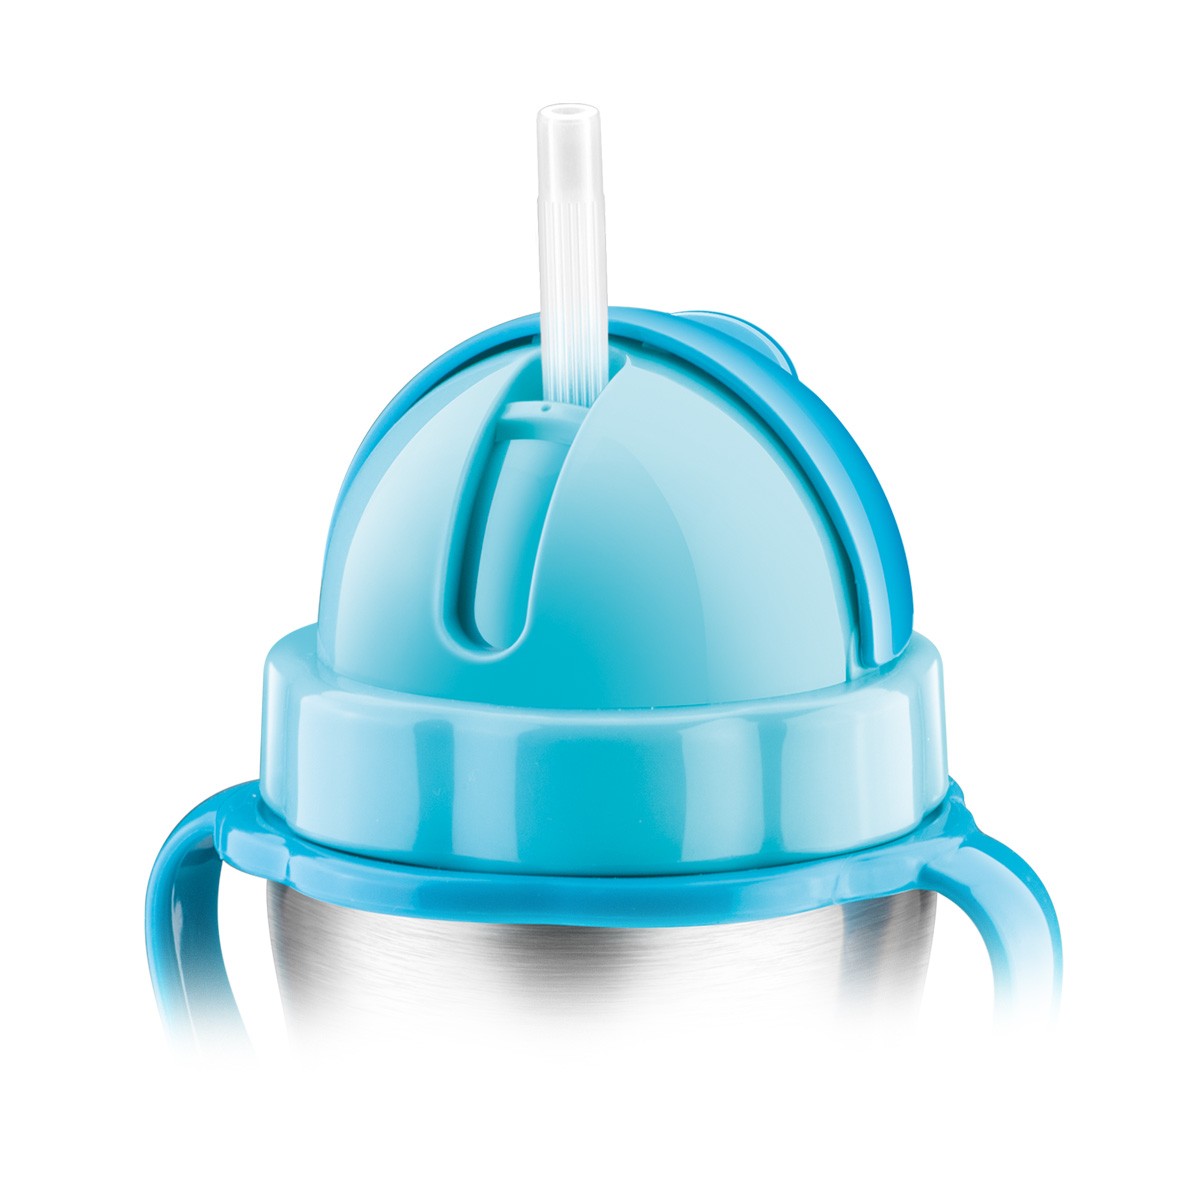 Dětská termoska s brčkem BAMBINI 300 ml, nerez, modrá